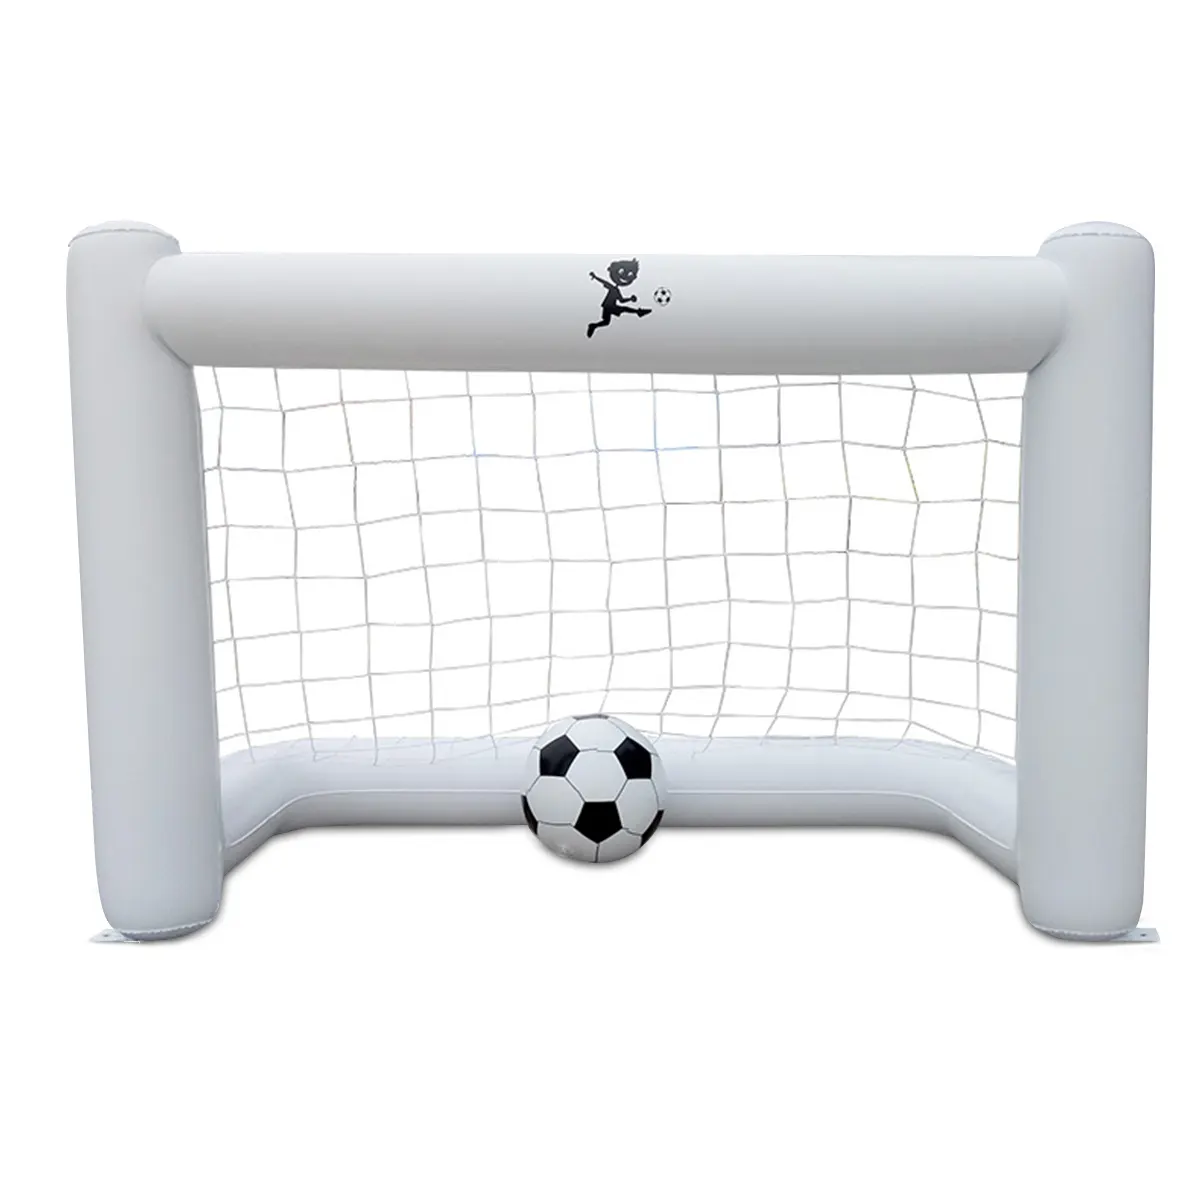 Porta da calcio gonfiabile porta da calcio in PVC per giochi sportivi all'aperto porta da calcio portatile per bambini obiettivi da calcio in Pvc